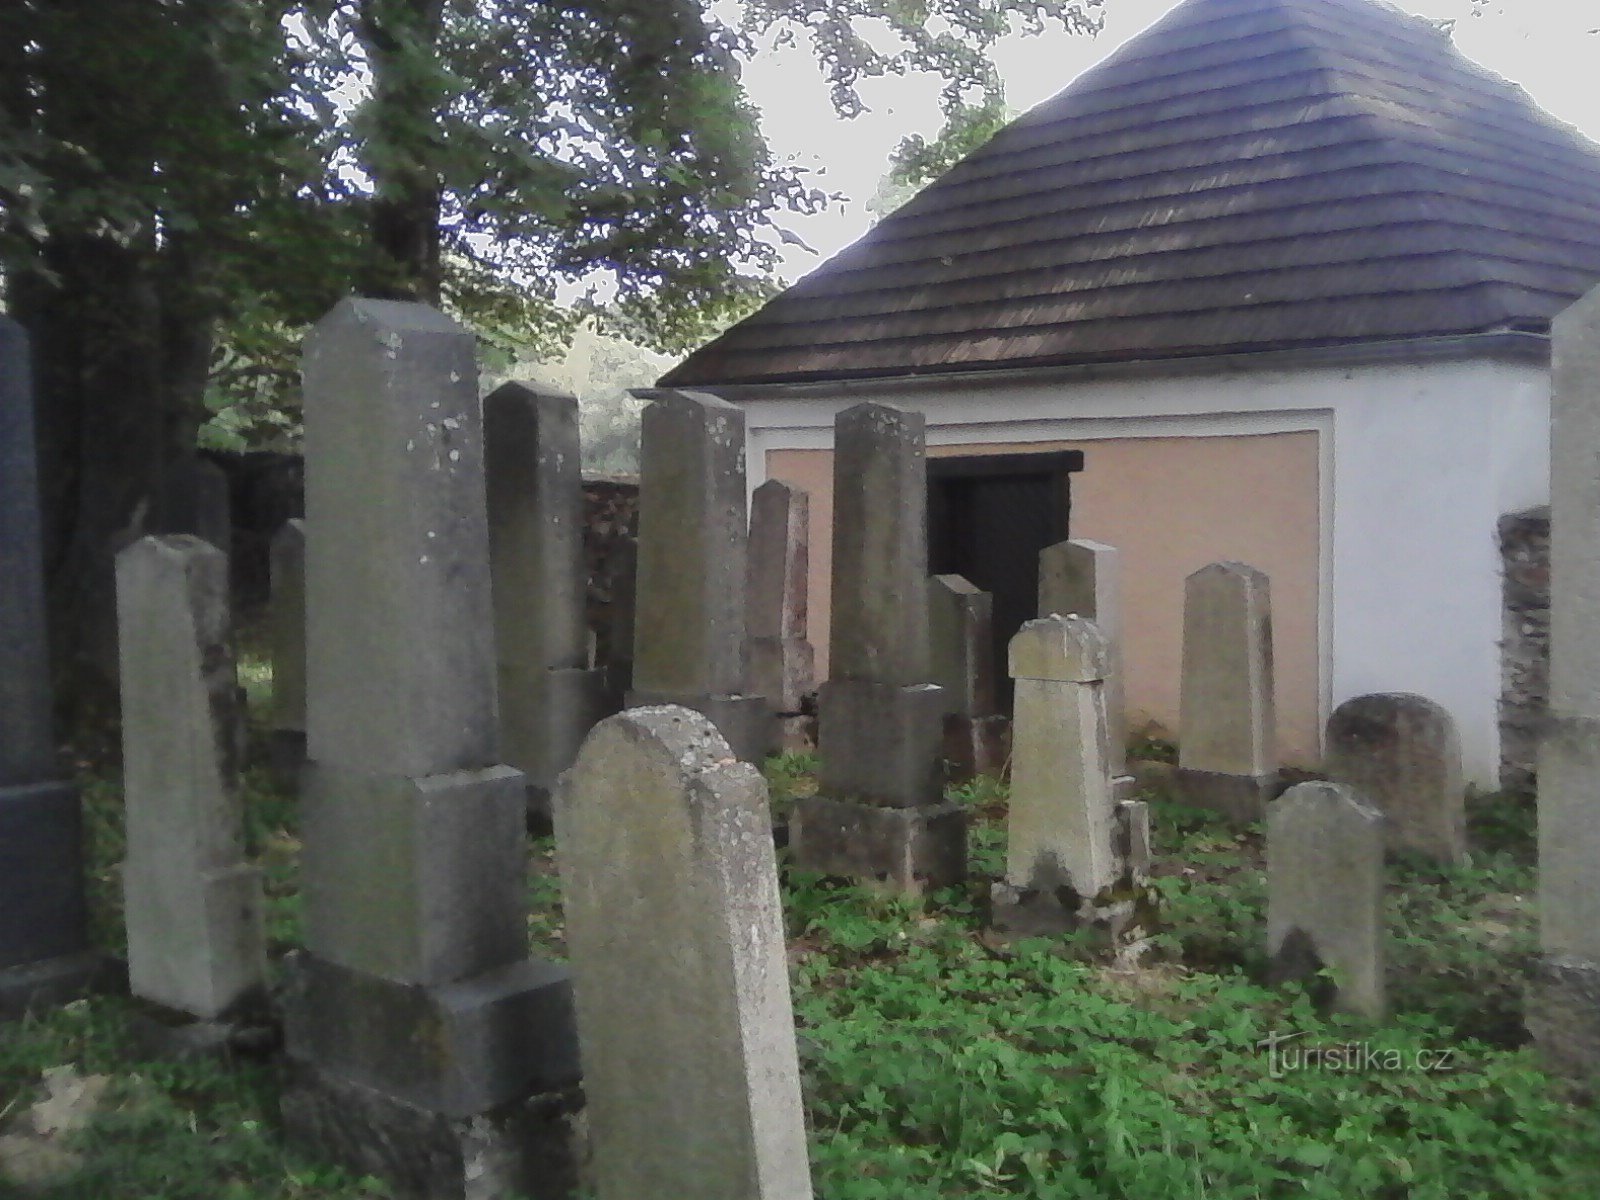 2. Cimitirul din Černovice fondat în secolul al XVII-lea, cele mai vechi pietre funerare de la sfârșitul secolului al XVII-lea